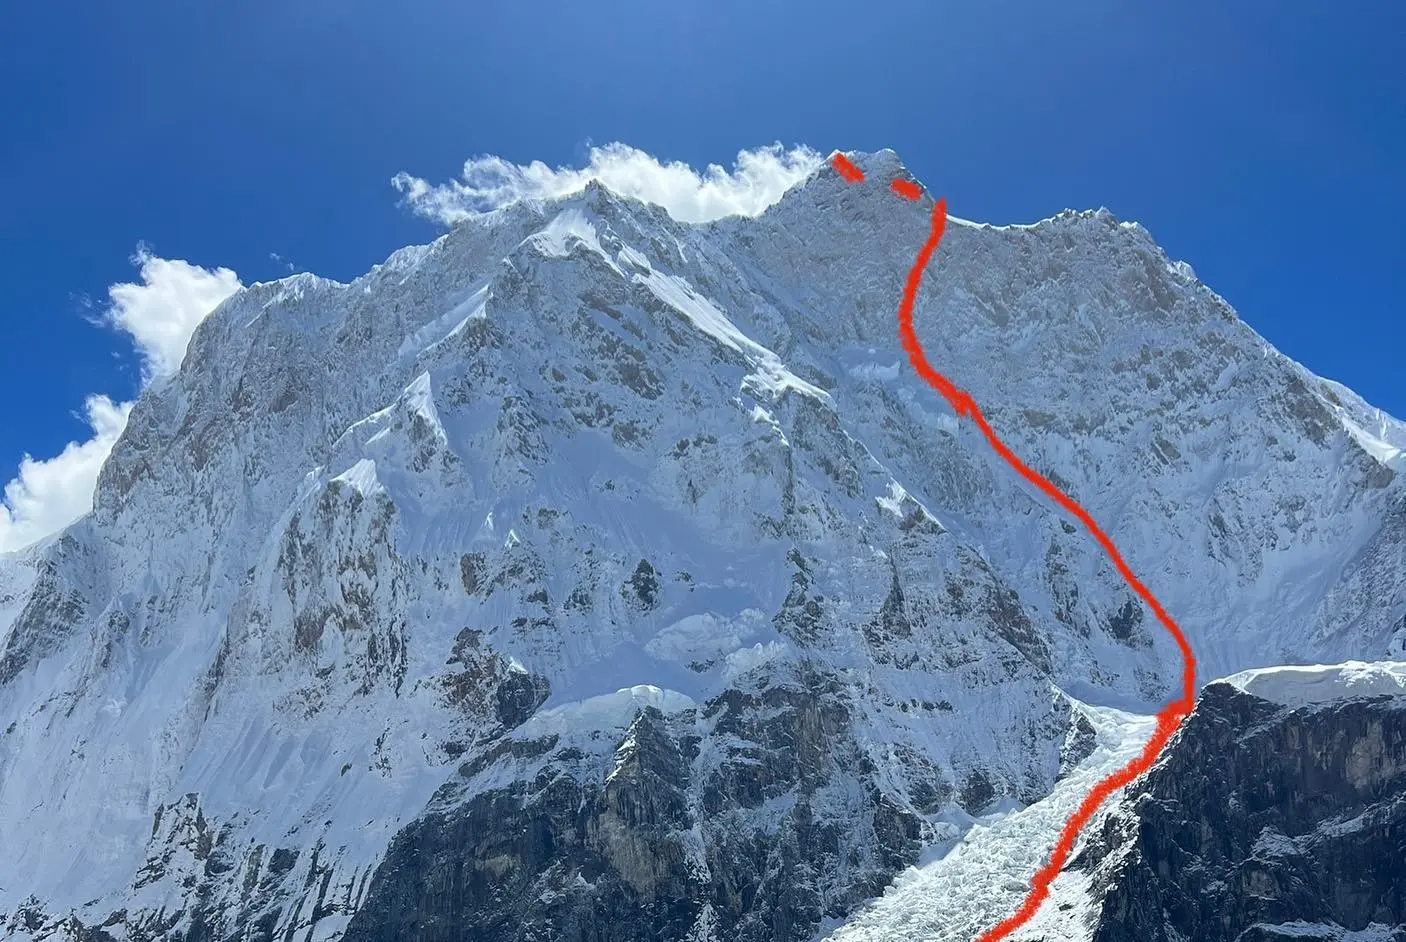 новий американський маршрут (2700 метрів, M7 AI5+ A0 ) по північній стіні Жанну (Jannu, 7710 метрів) у Непалі